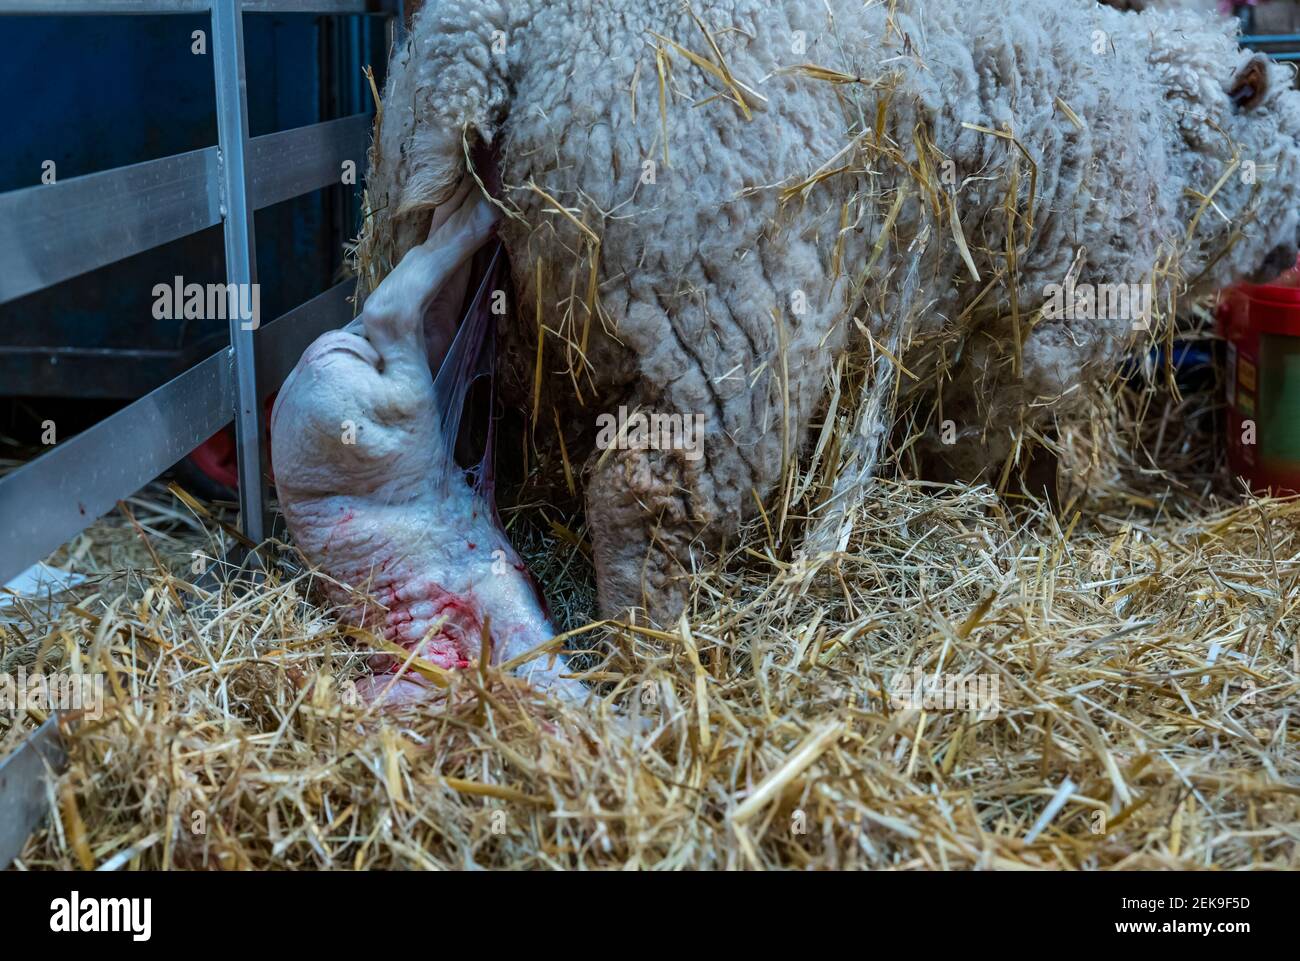 GRAFISCHER INHALT: East Lothian, Schottland, Großbritannien, 23rd. Februar 2021. Lammgeburt: Ein schwangeres Shetland-Mutterschaf in Briggs Shetland Lamm gebiert. Dieses Mutterschaf begann heute Morgen spät zu arbeiten und brachte eine Stunde später ein Lamm zur Welt. Das Lamm wird geboren Stockfoto